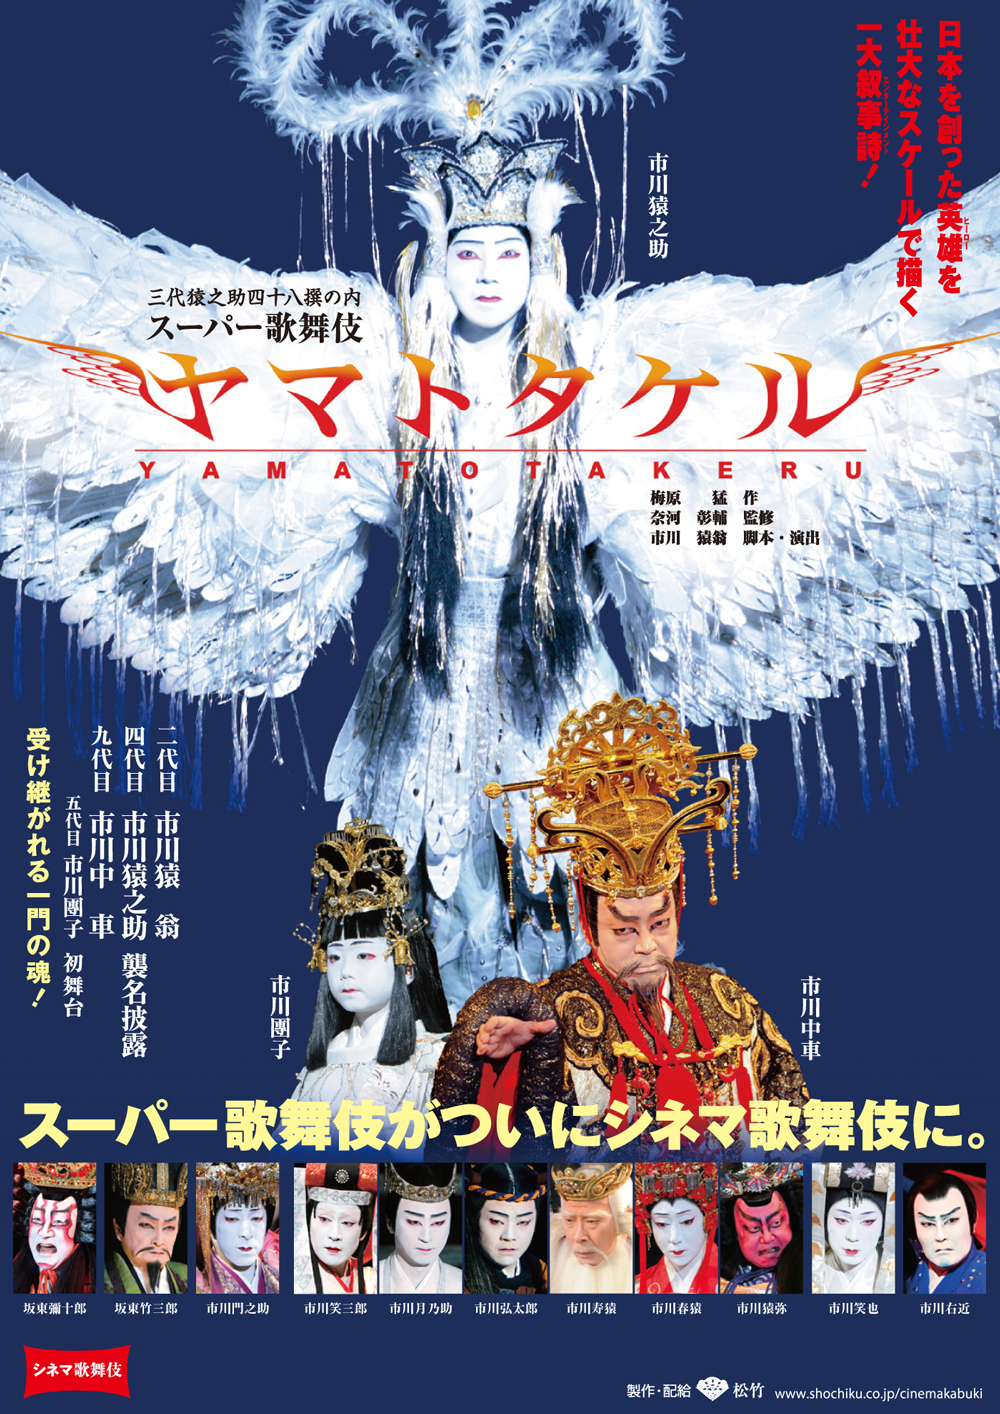 《月イチ歌舞伎》東劇限定『スーパー歌舞伎 ヤマトタケル』半券割引キャンペーンのお知らせ